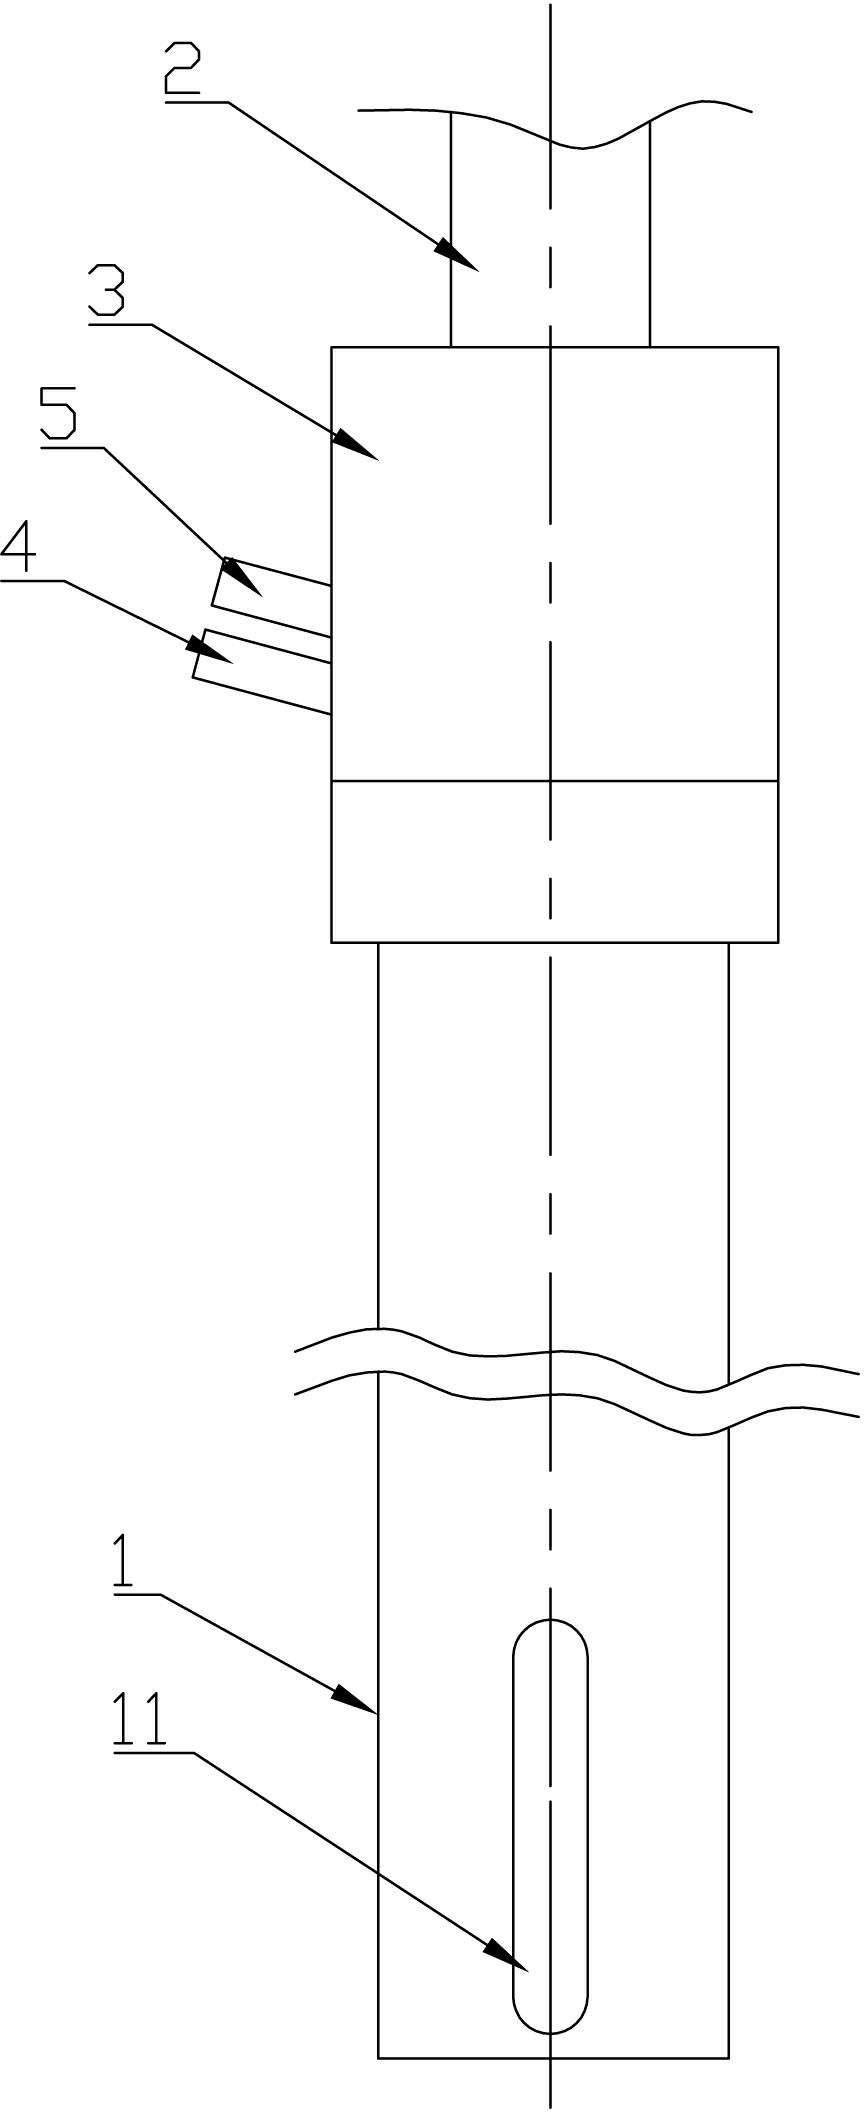 High negative pressure non-clogging drainage tube